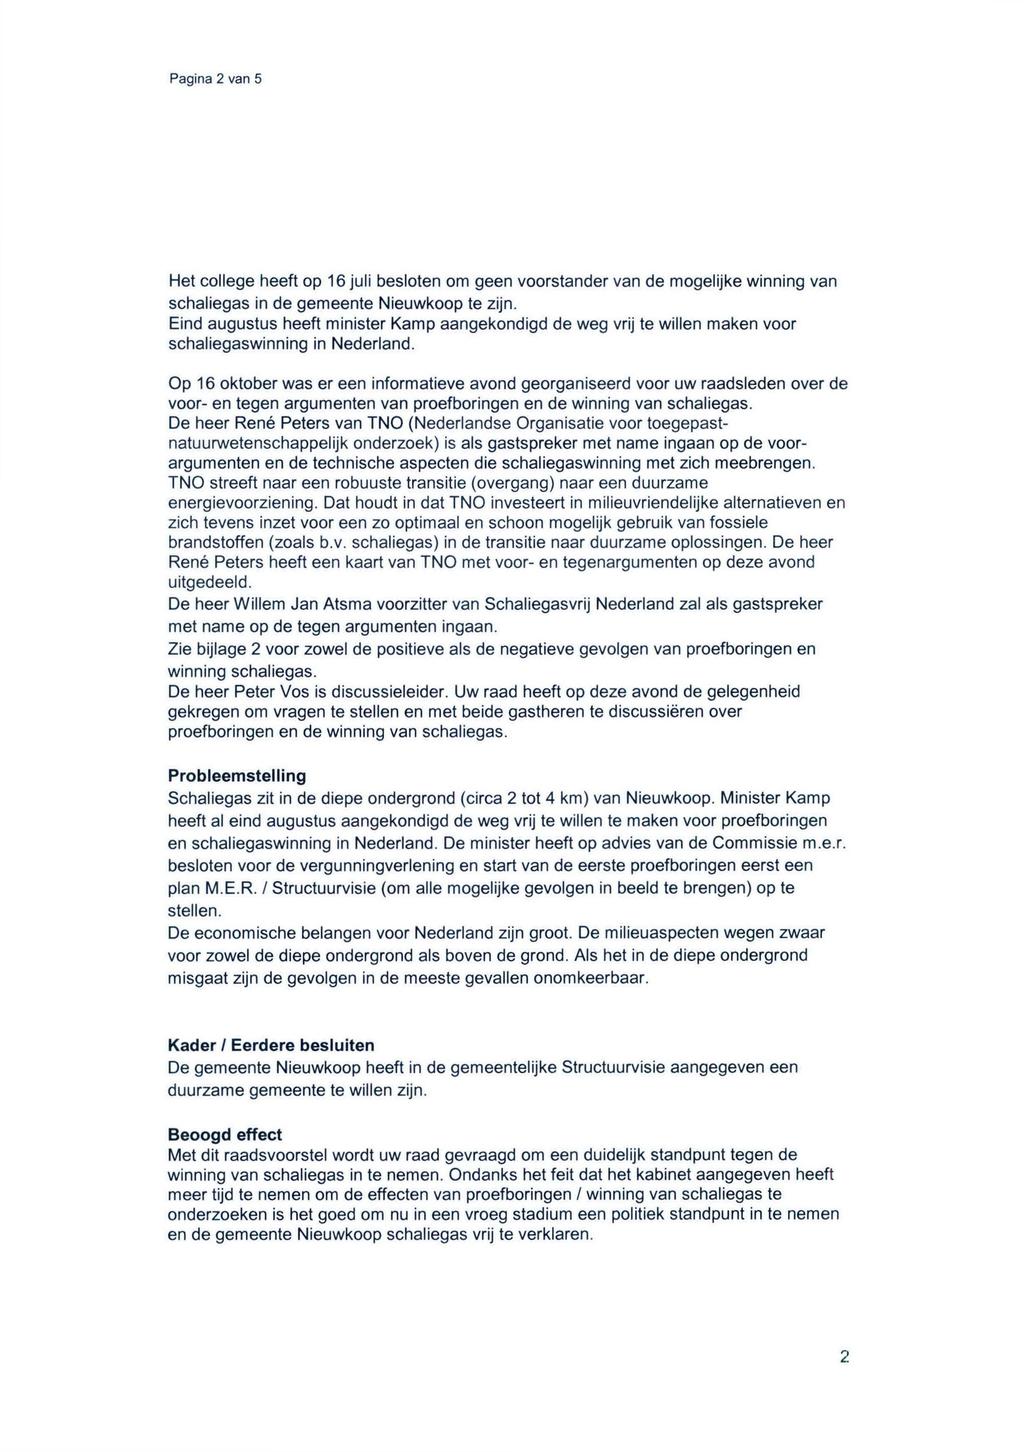 Pagina 2 van 5 Het college heeft op 16 juli besloten om geen voorstander van de mogelijke winning van schaliegas in de gemeente Nieuwkoop te zijn.